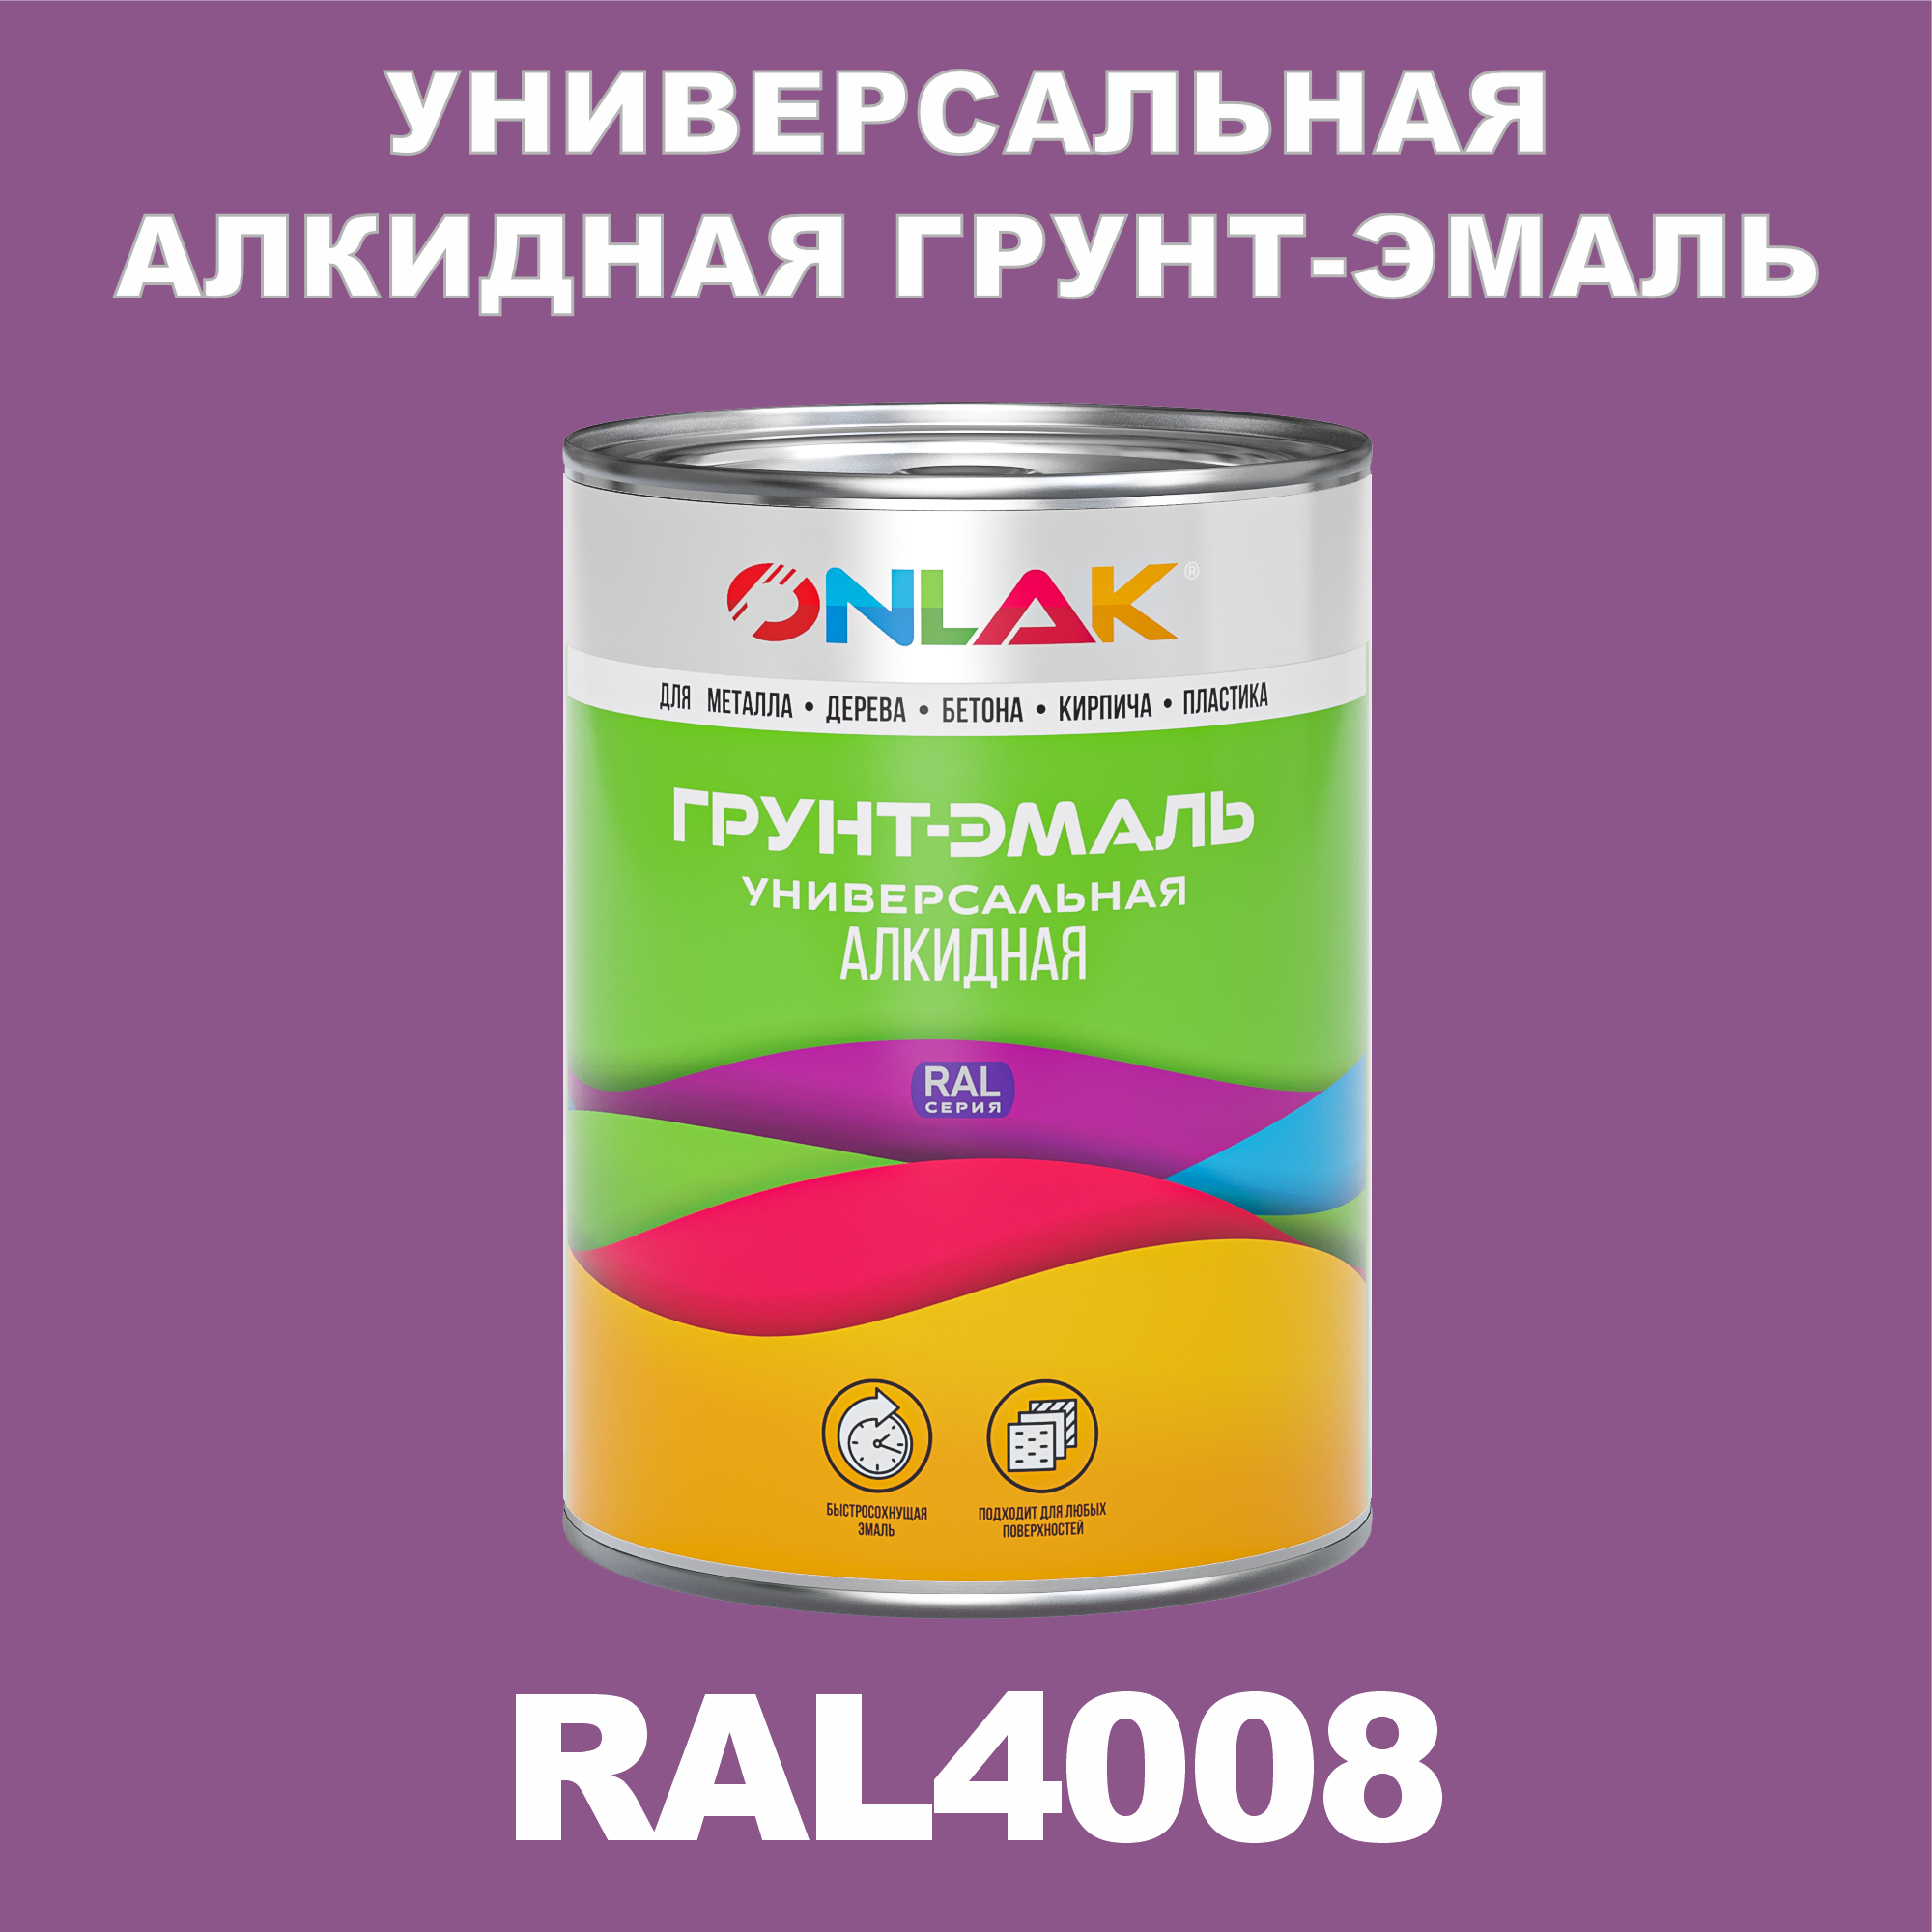 Грунт-эмаль ONLAK 1К RAL4008 антикоррозионная алкидная по металлу по ржавчине 1 кг антикоррозионная грунт эмаль onlak ral 4002 фиолетовый 720 мл